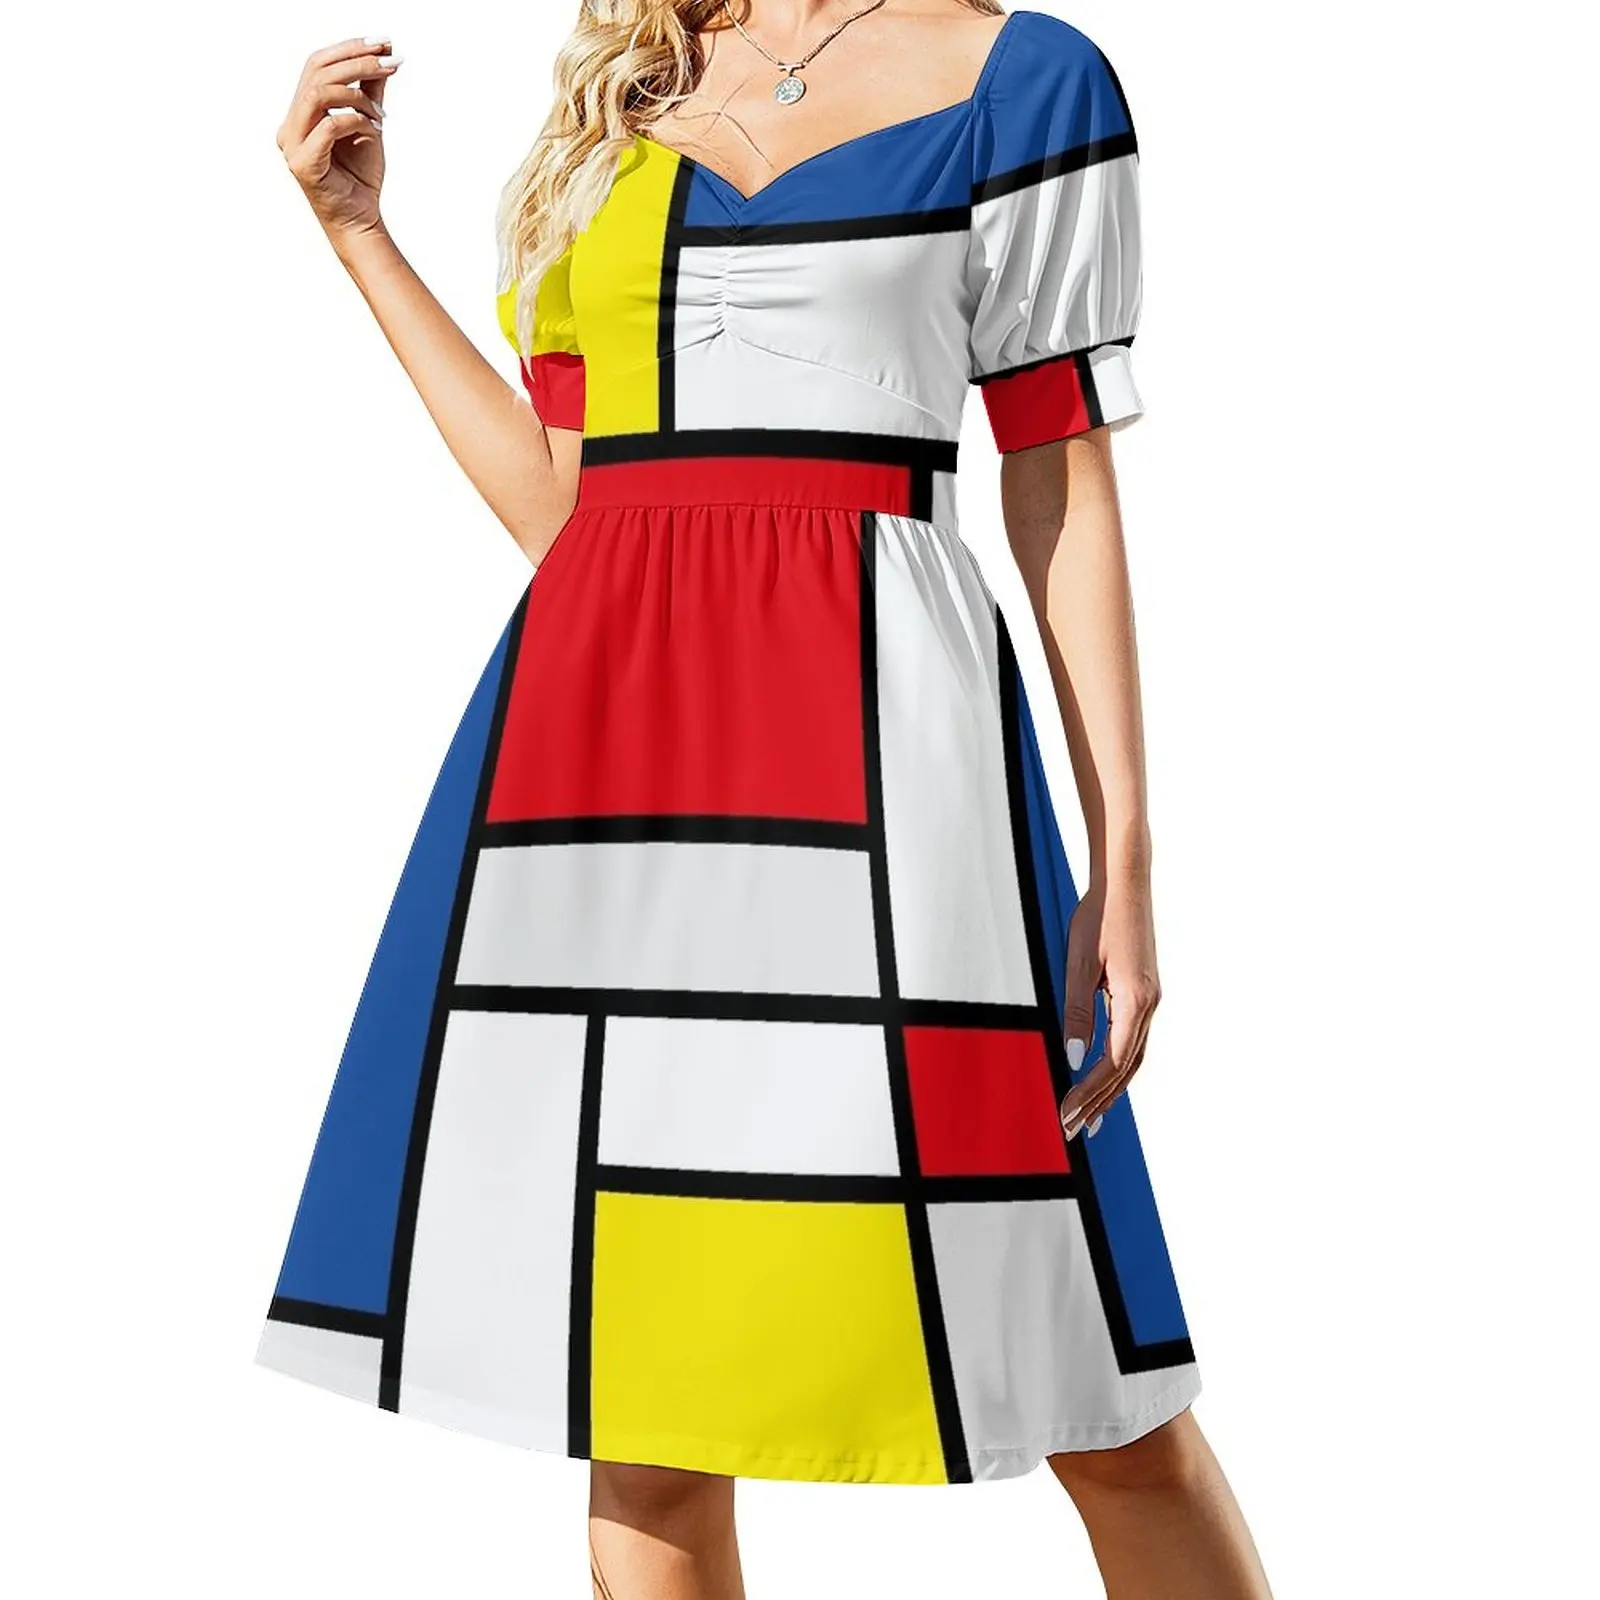 

mondrian minimalist de stijl modern art abstract design new Sleeveless Dress women clothes